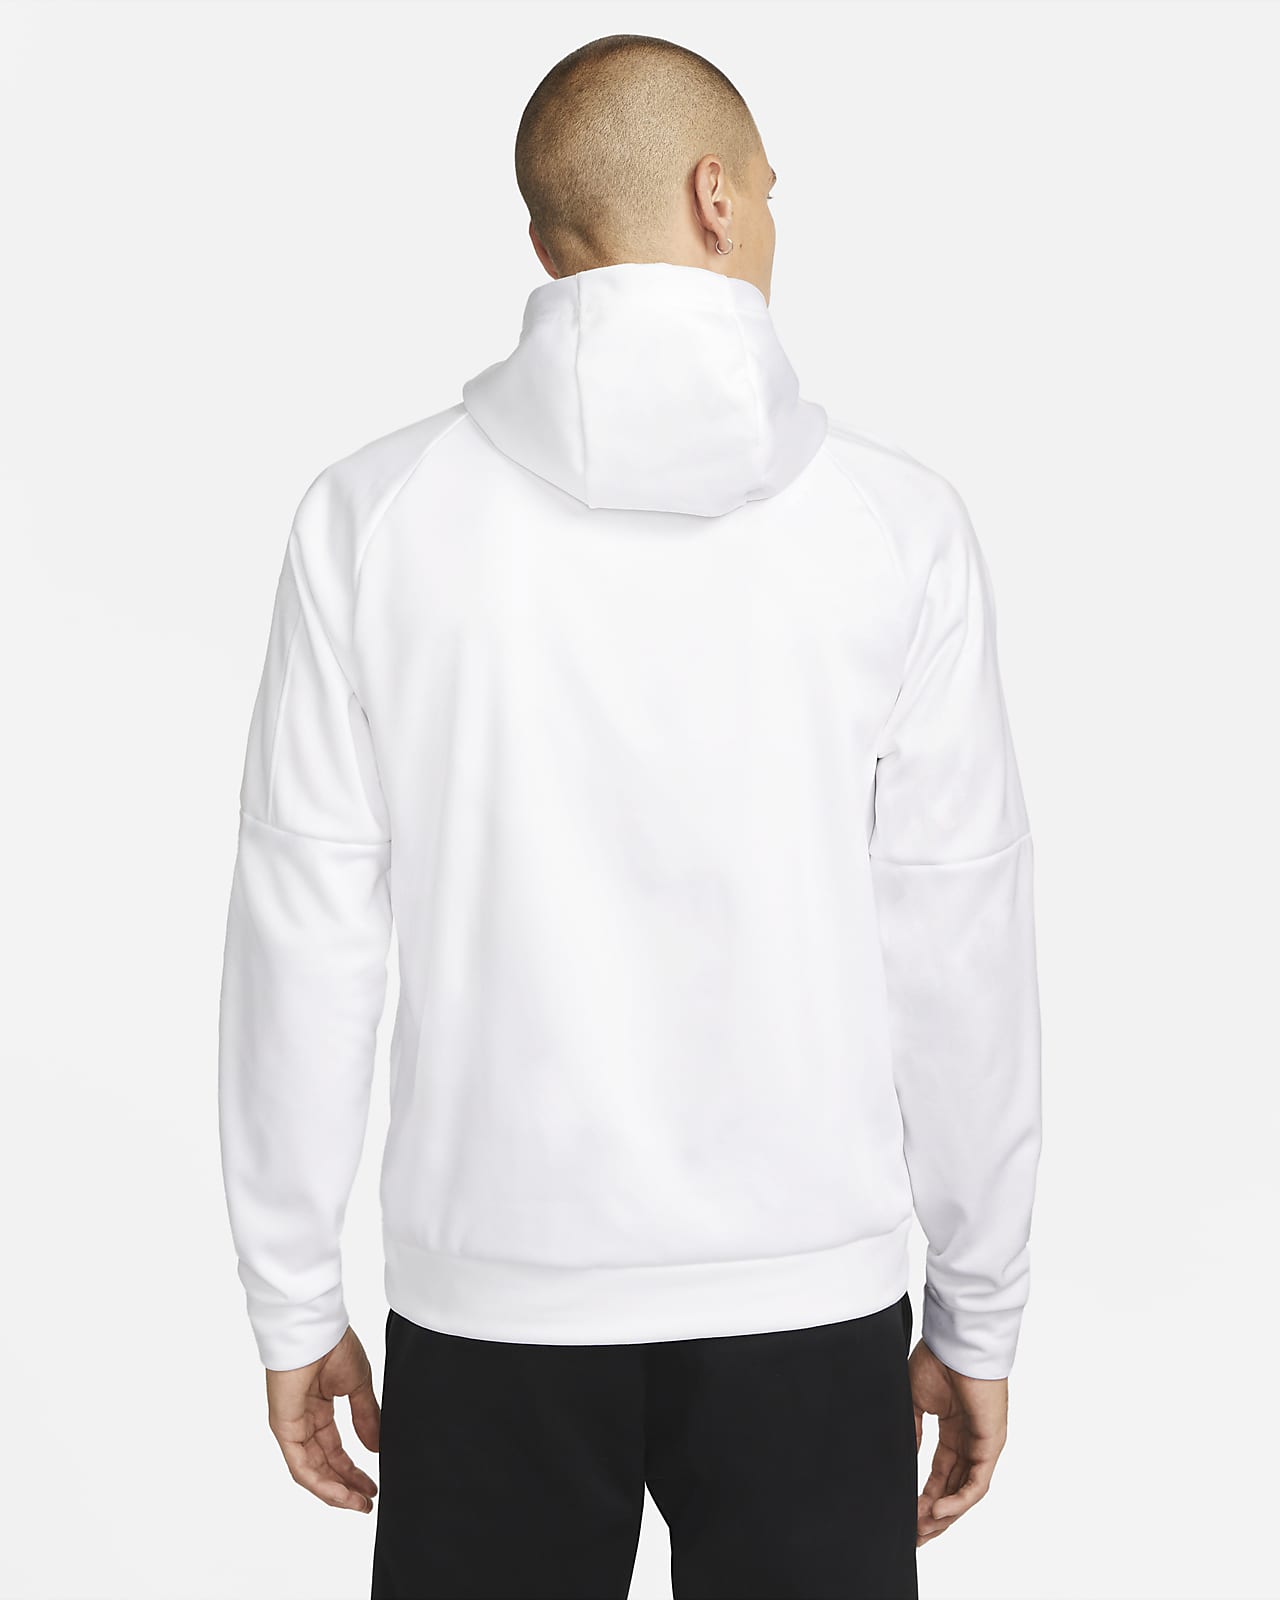 Nike Club Fleece Pullover Longsleeve Men's Hoodie Black/White 804346-010